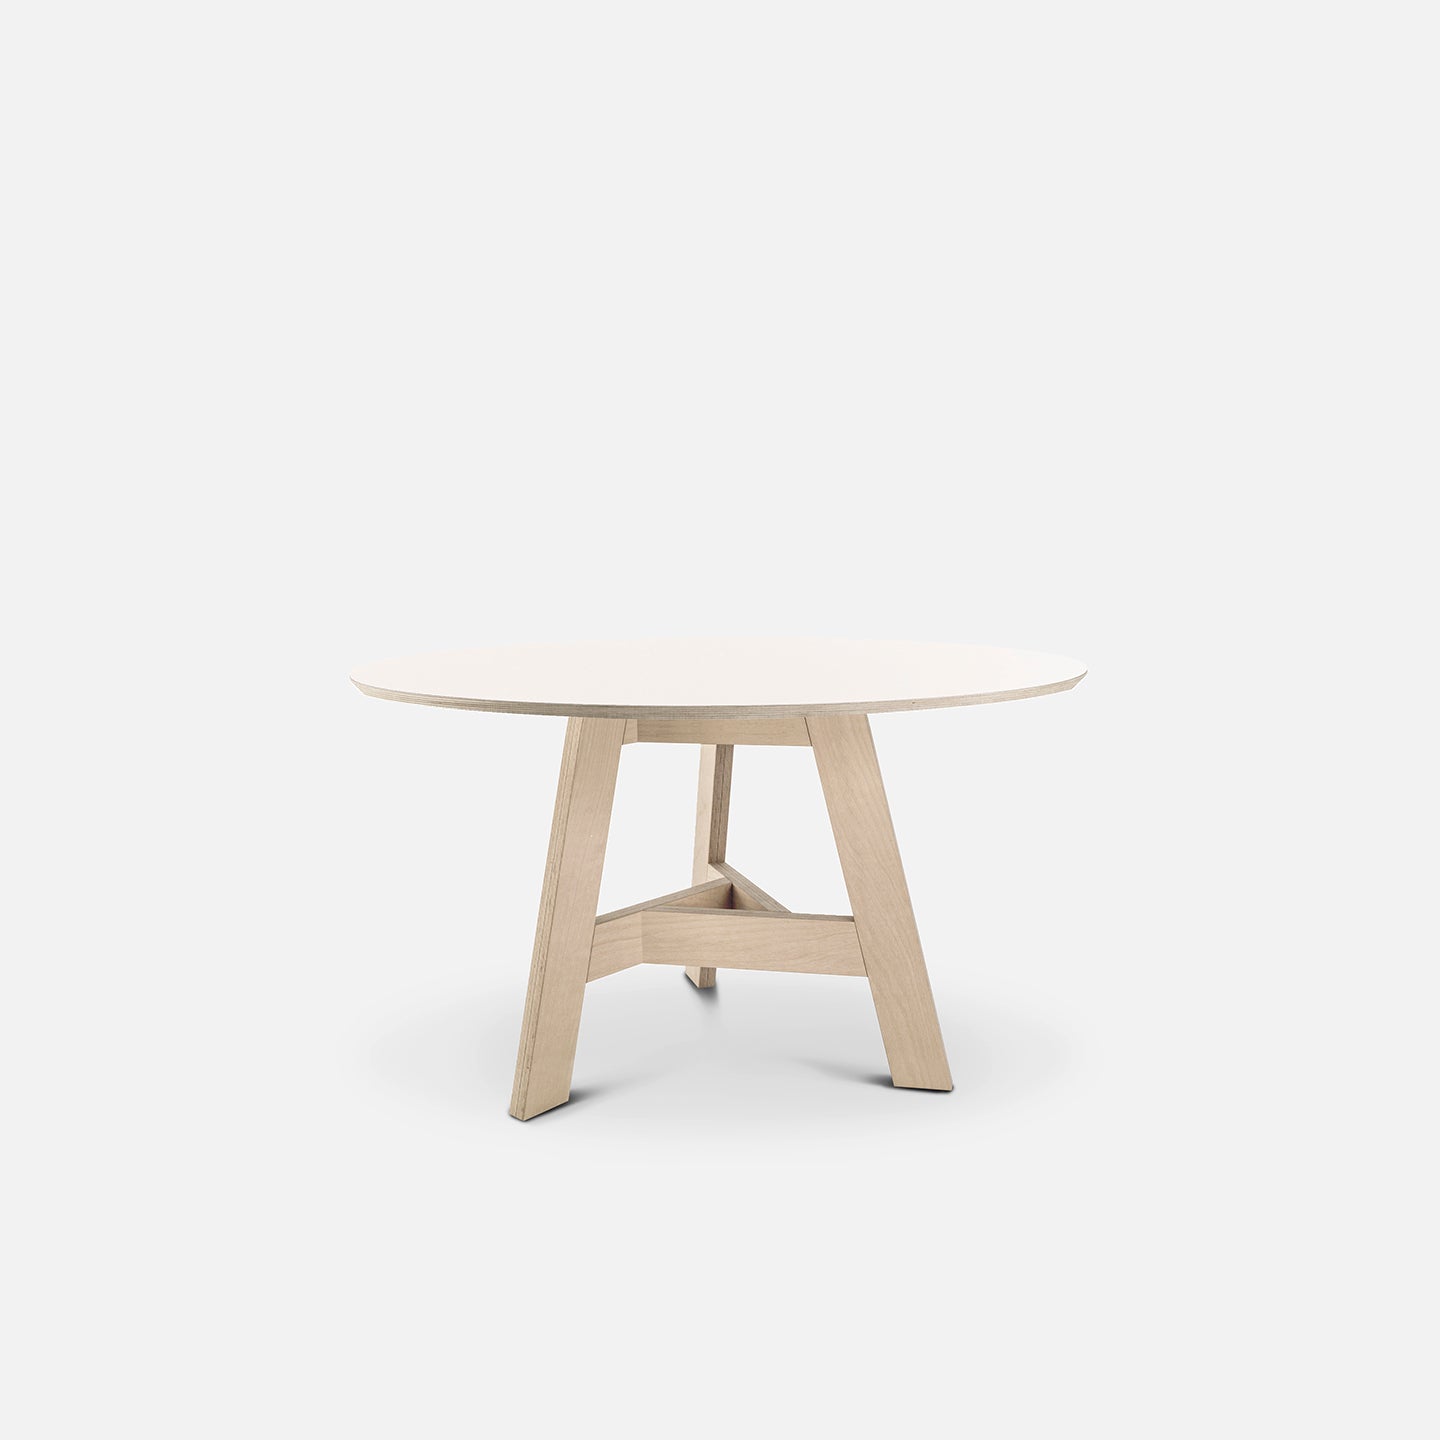 Rustiek spier studio Ronde design tafel Triround CC - Arp design